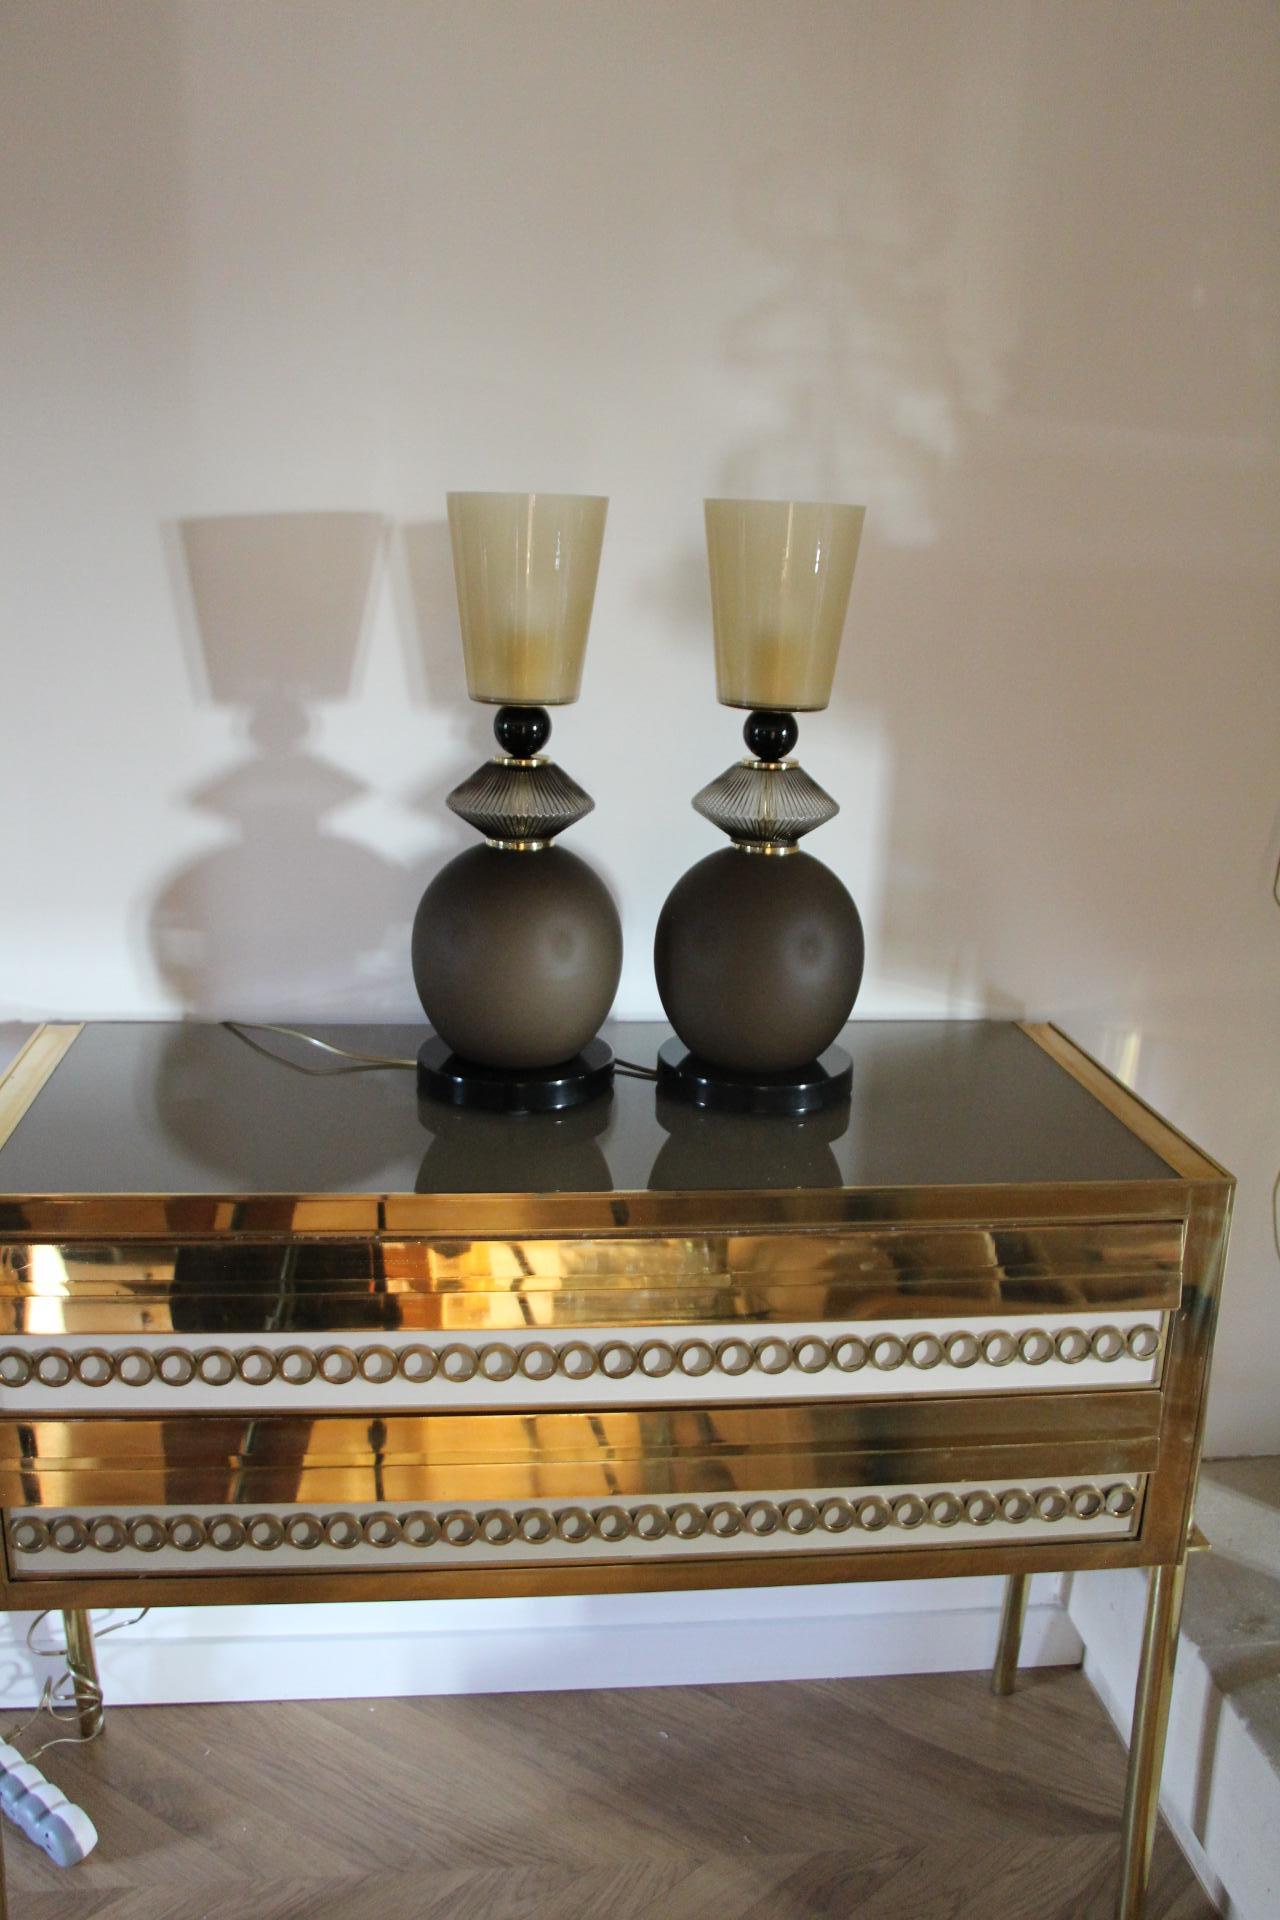 Dieses beeindruckende Paar von Tischlampen ist in einem sehr schönen rauchbraunen Farbe mattes Glas gemacht. 
Der Sockel besteht aus einem tiefen Stück glänzenden schwarzen Murano-Glases, das an die obere schwarze Glaskugel erinnert, während der